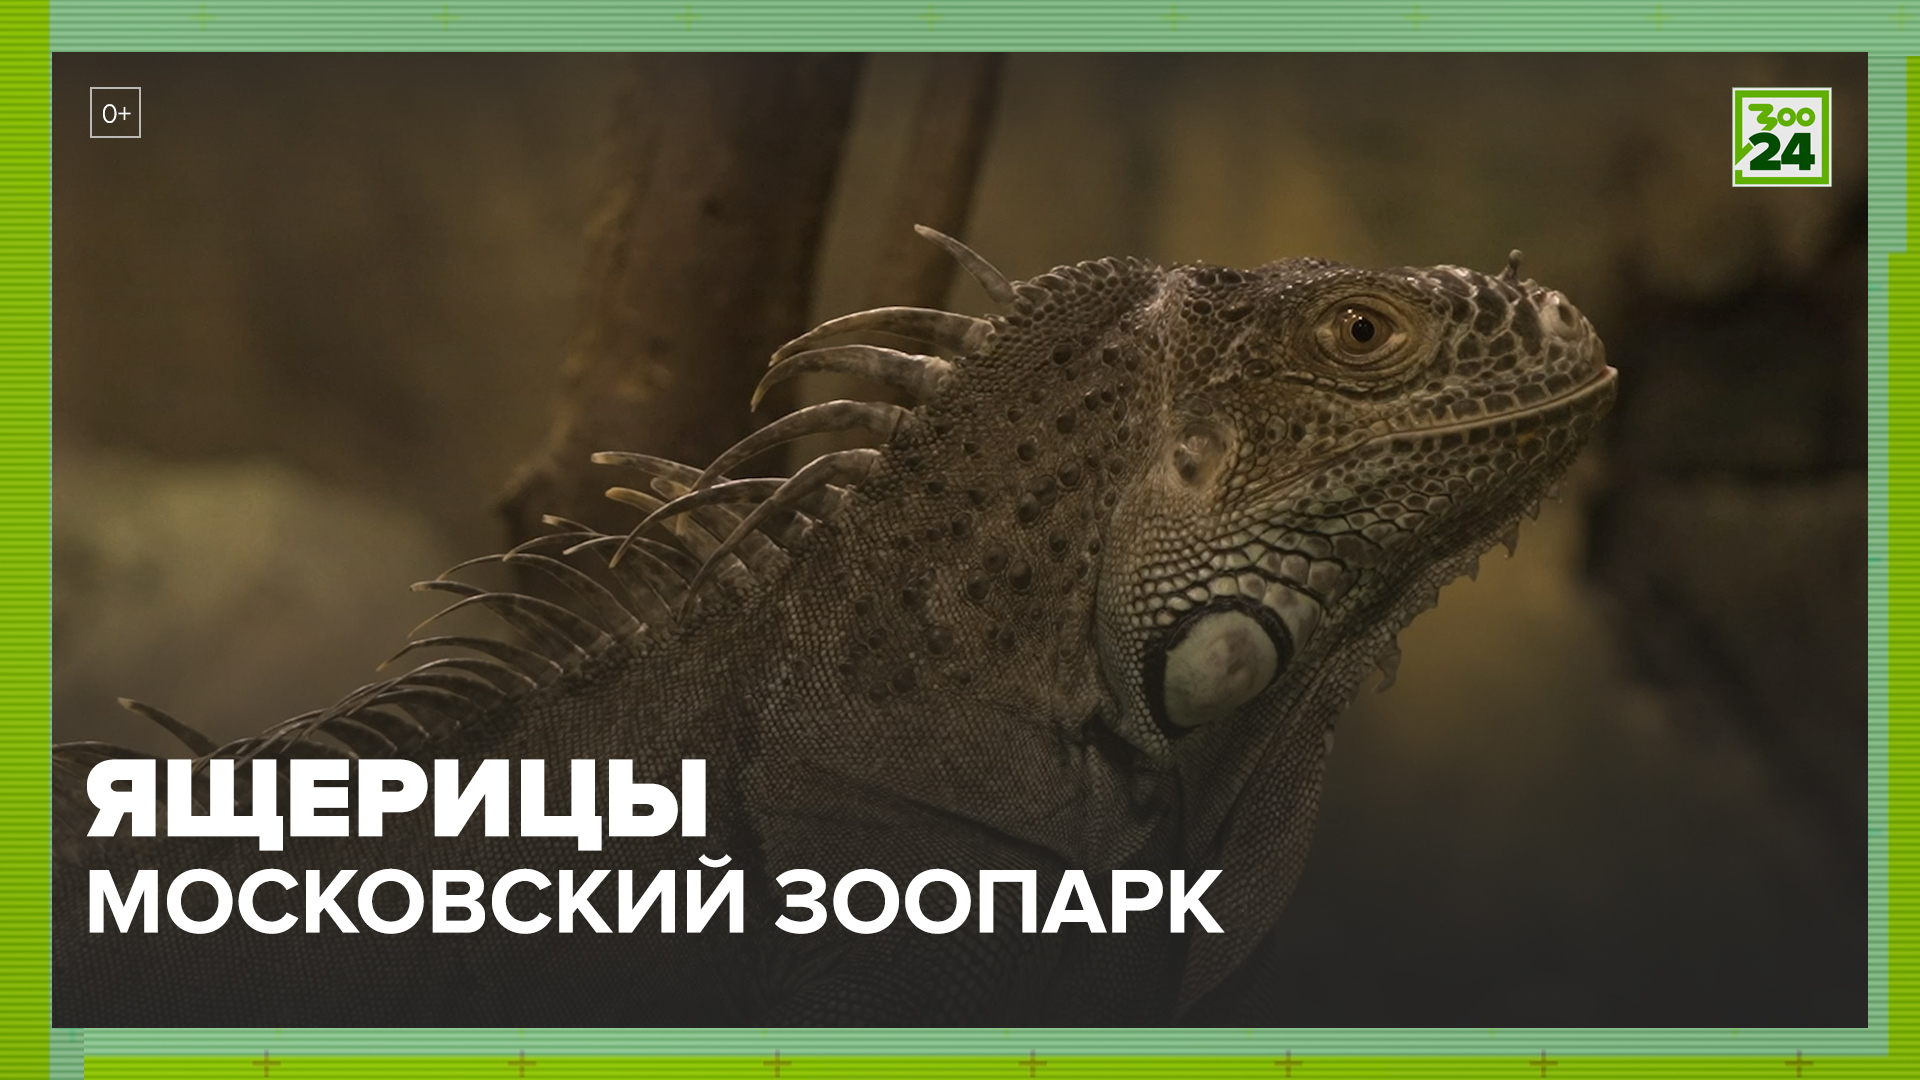 Ящерицы | Московский зоопарк | ЗОО 24